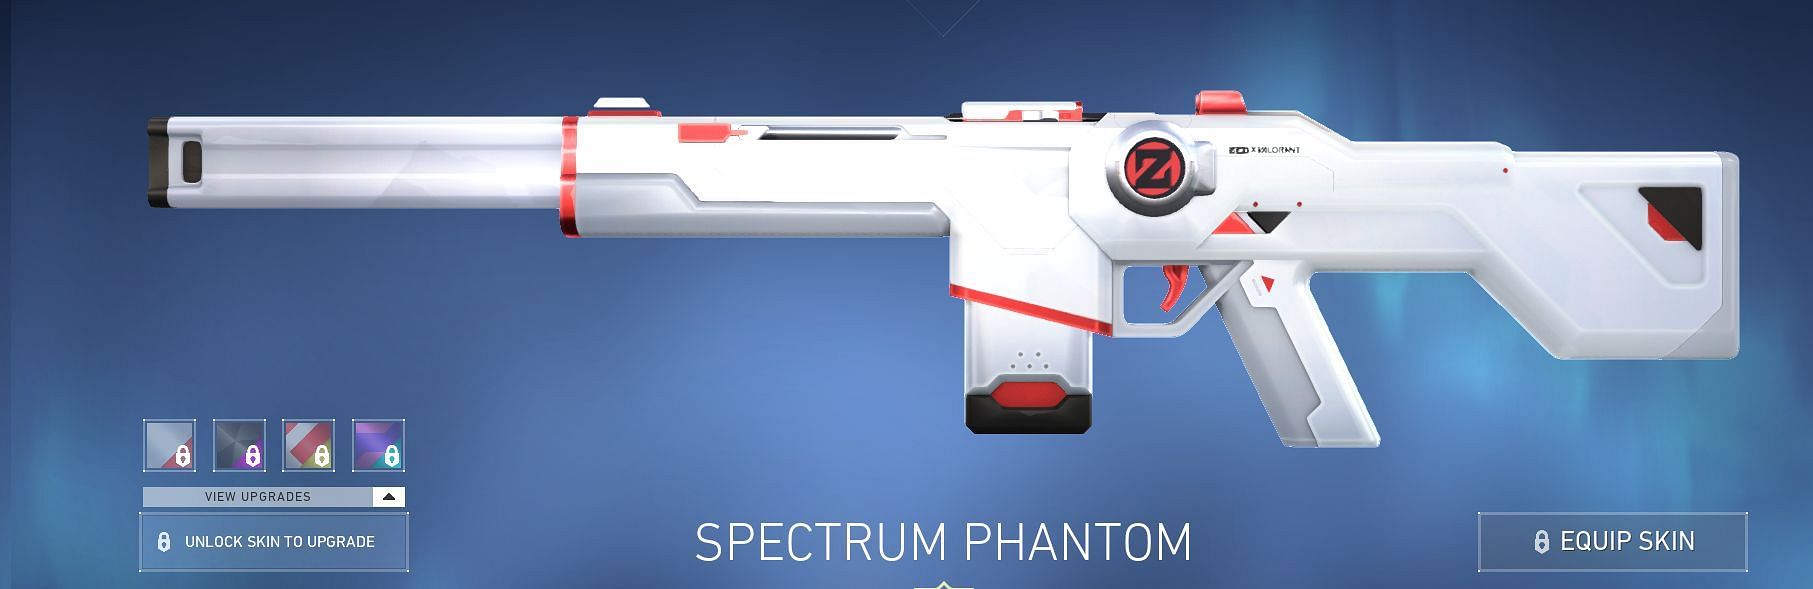 Spectrum Phantom (Image via Riot Games)